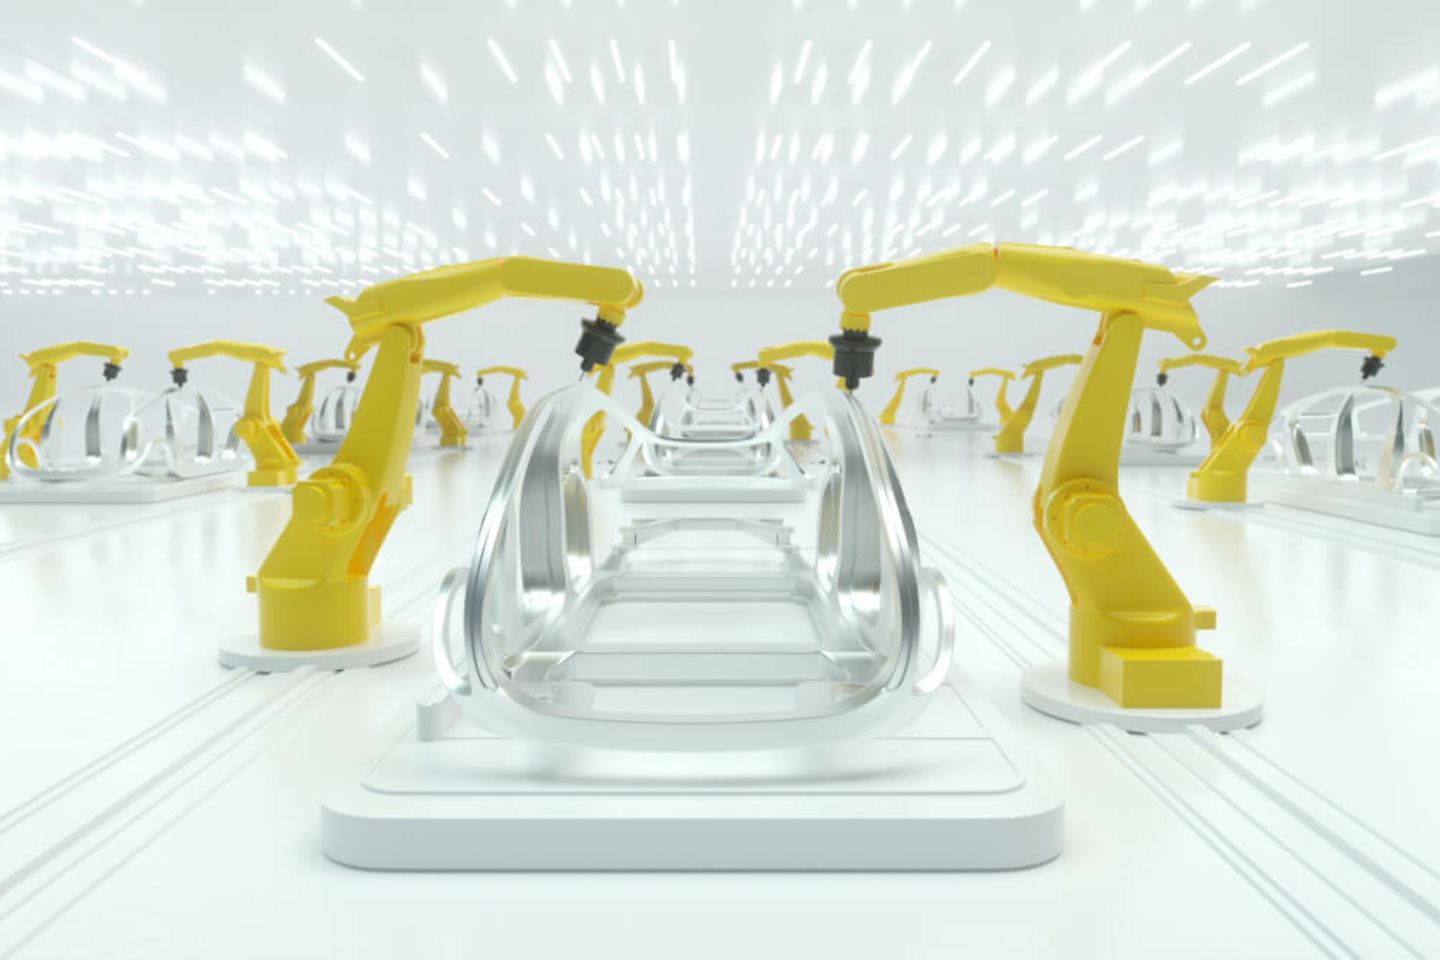 braços robóticos amarelos trabalham na construção de uma carroceria